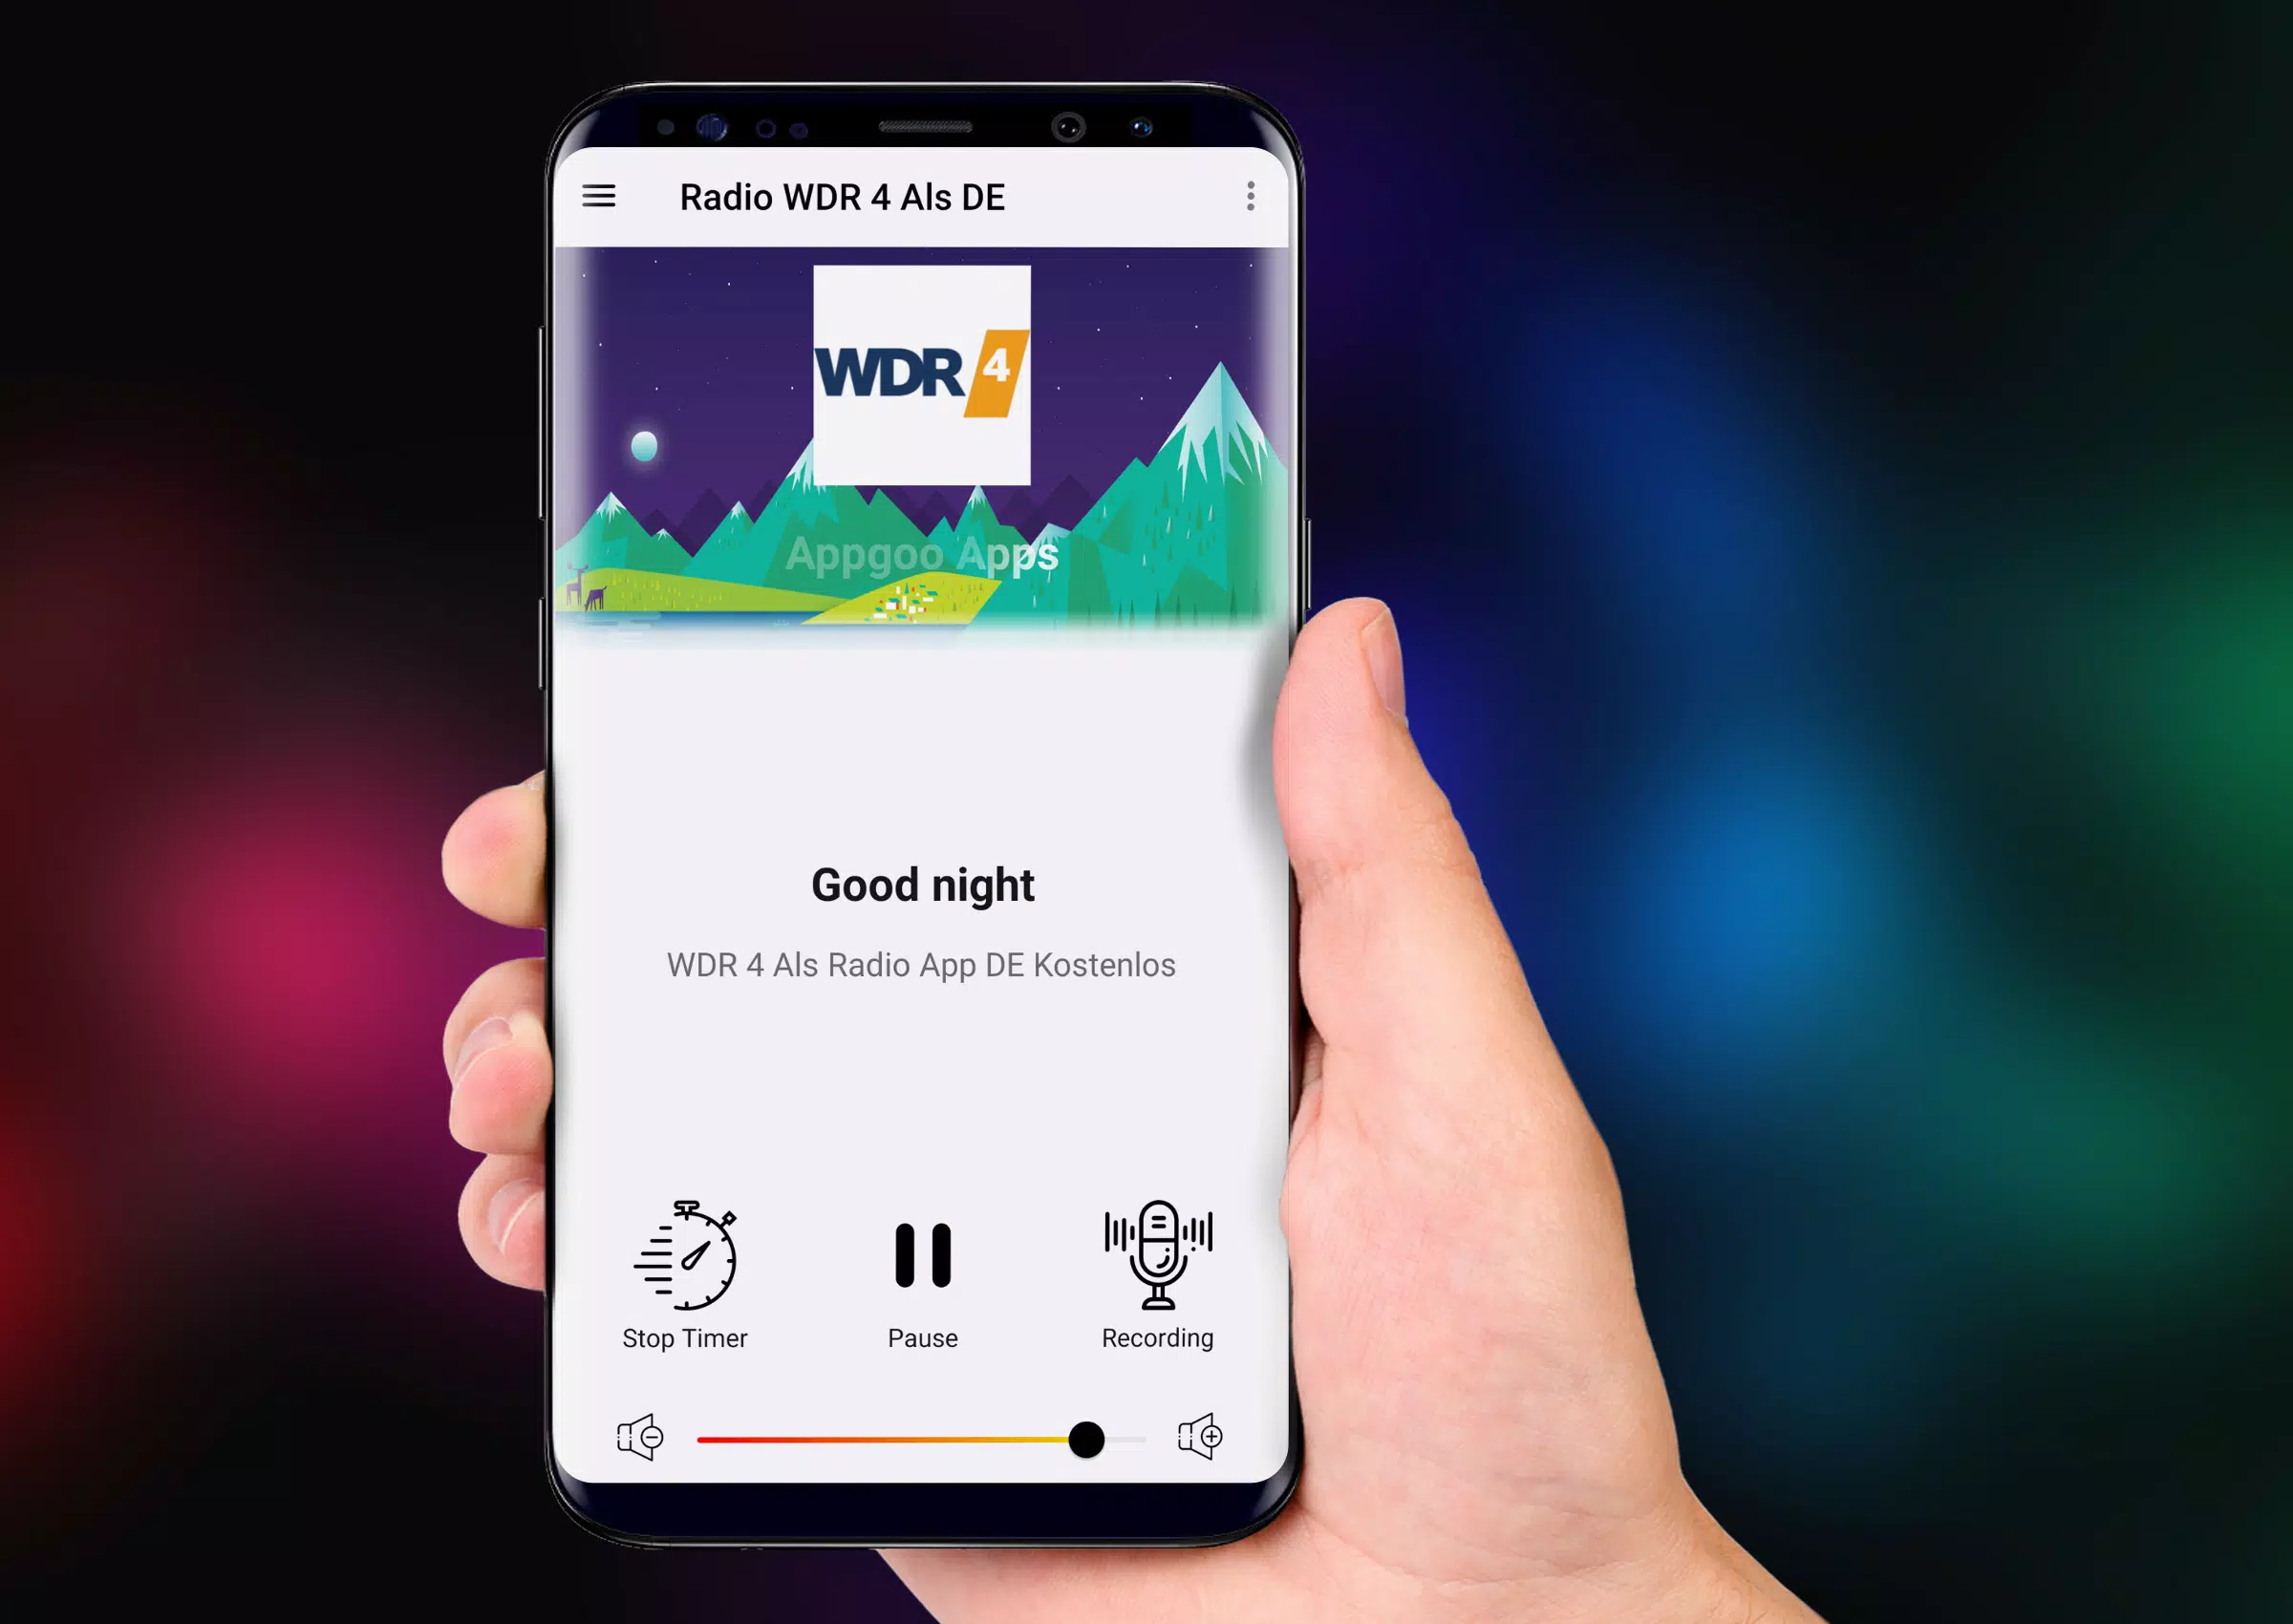 下载WDR 4 Als Radio App DE Kostenlos Online Radio Fm的安卓版本